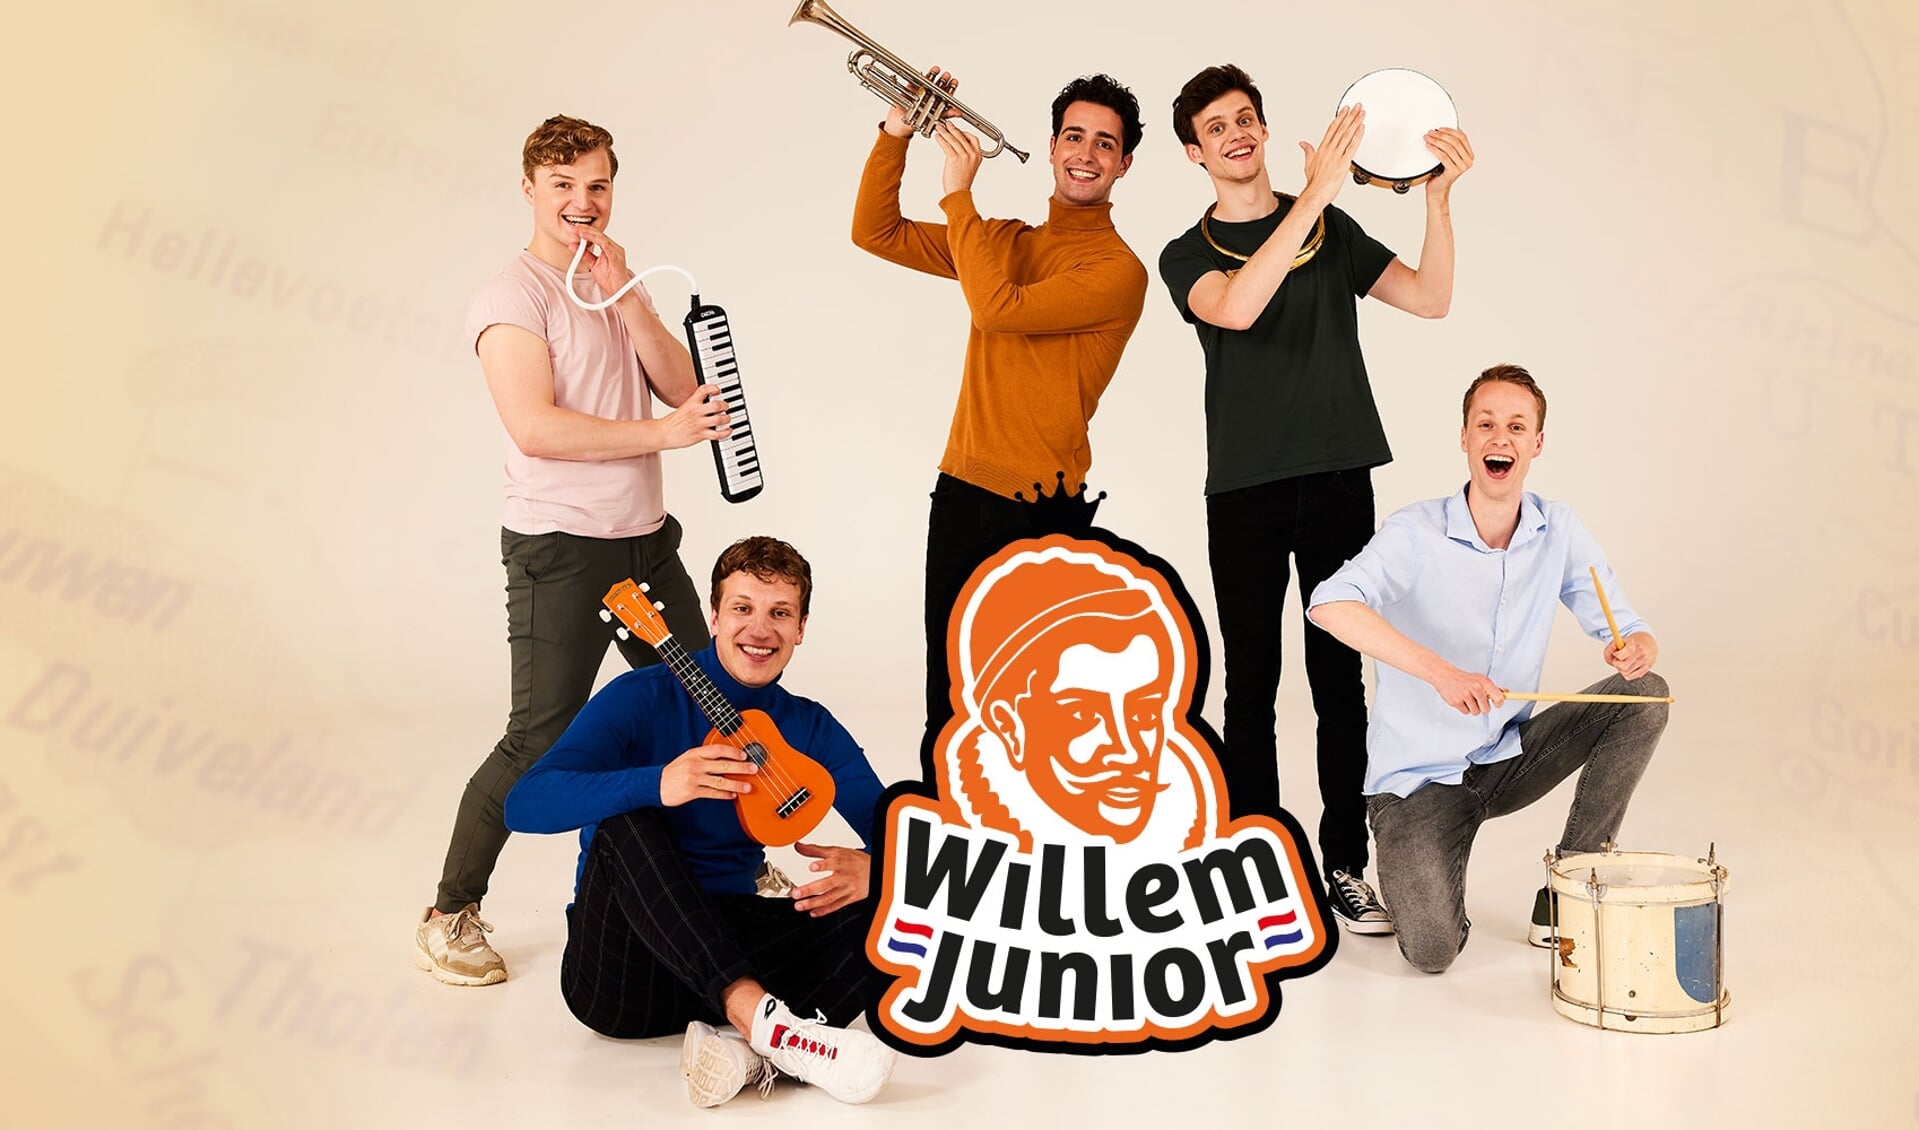 Willem Junior.